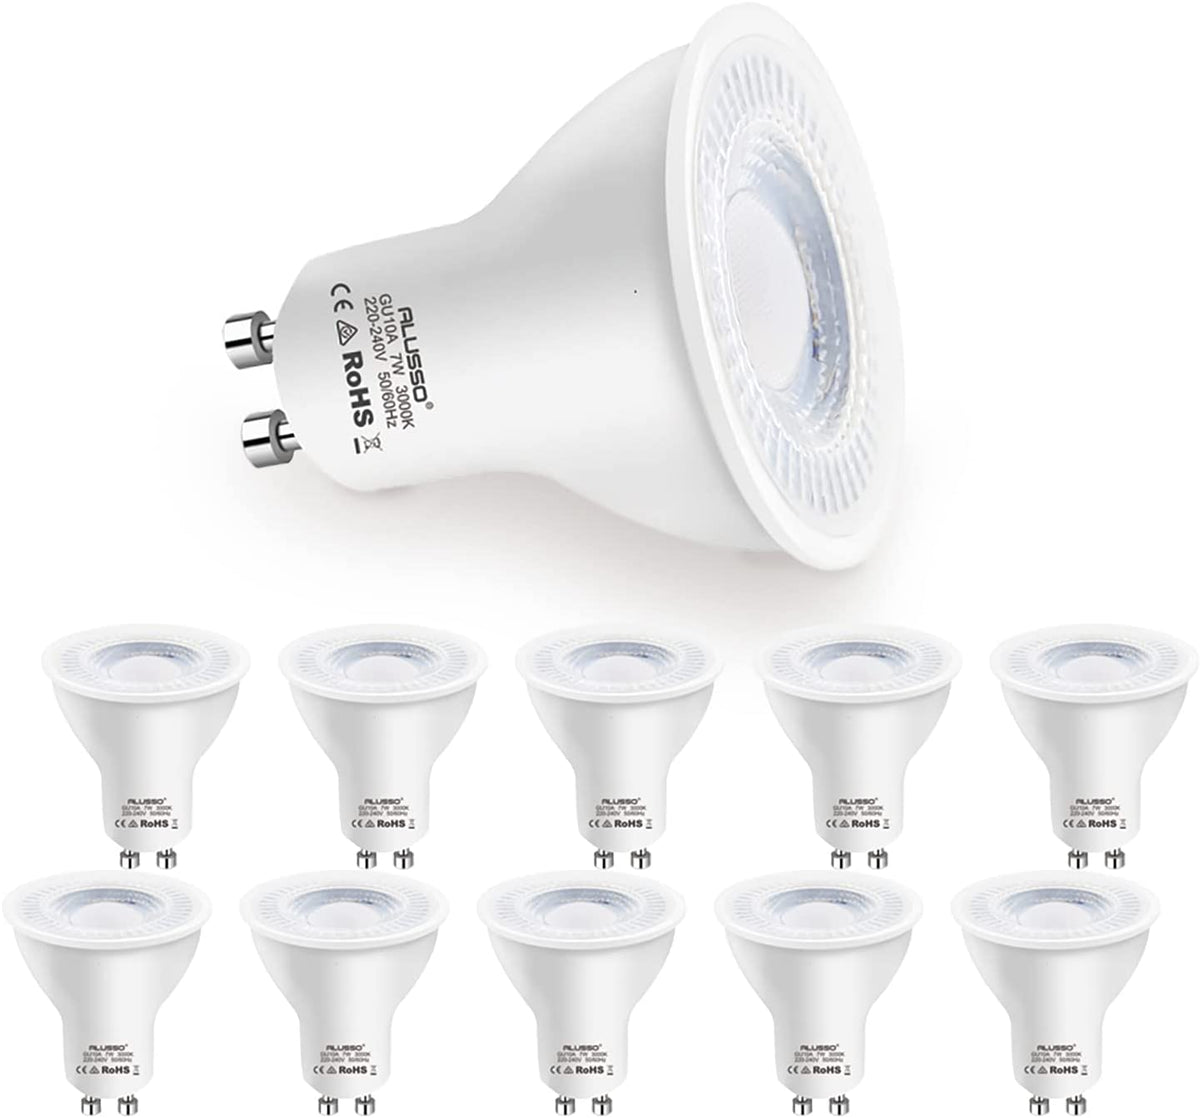 Lot de 10 ampoules LED LAP 0318784030 GU10 345lm 3,6W